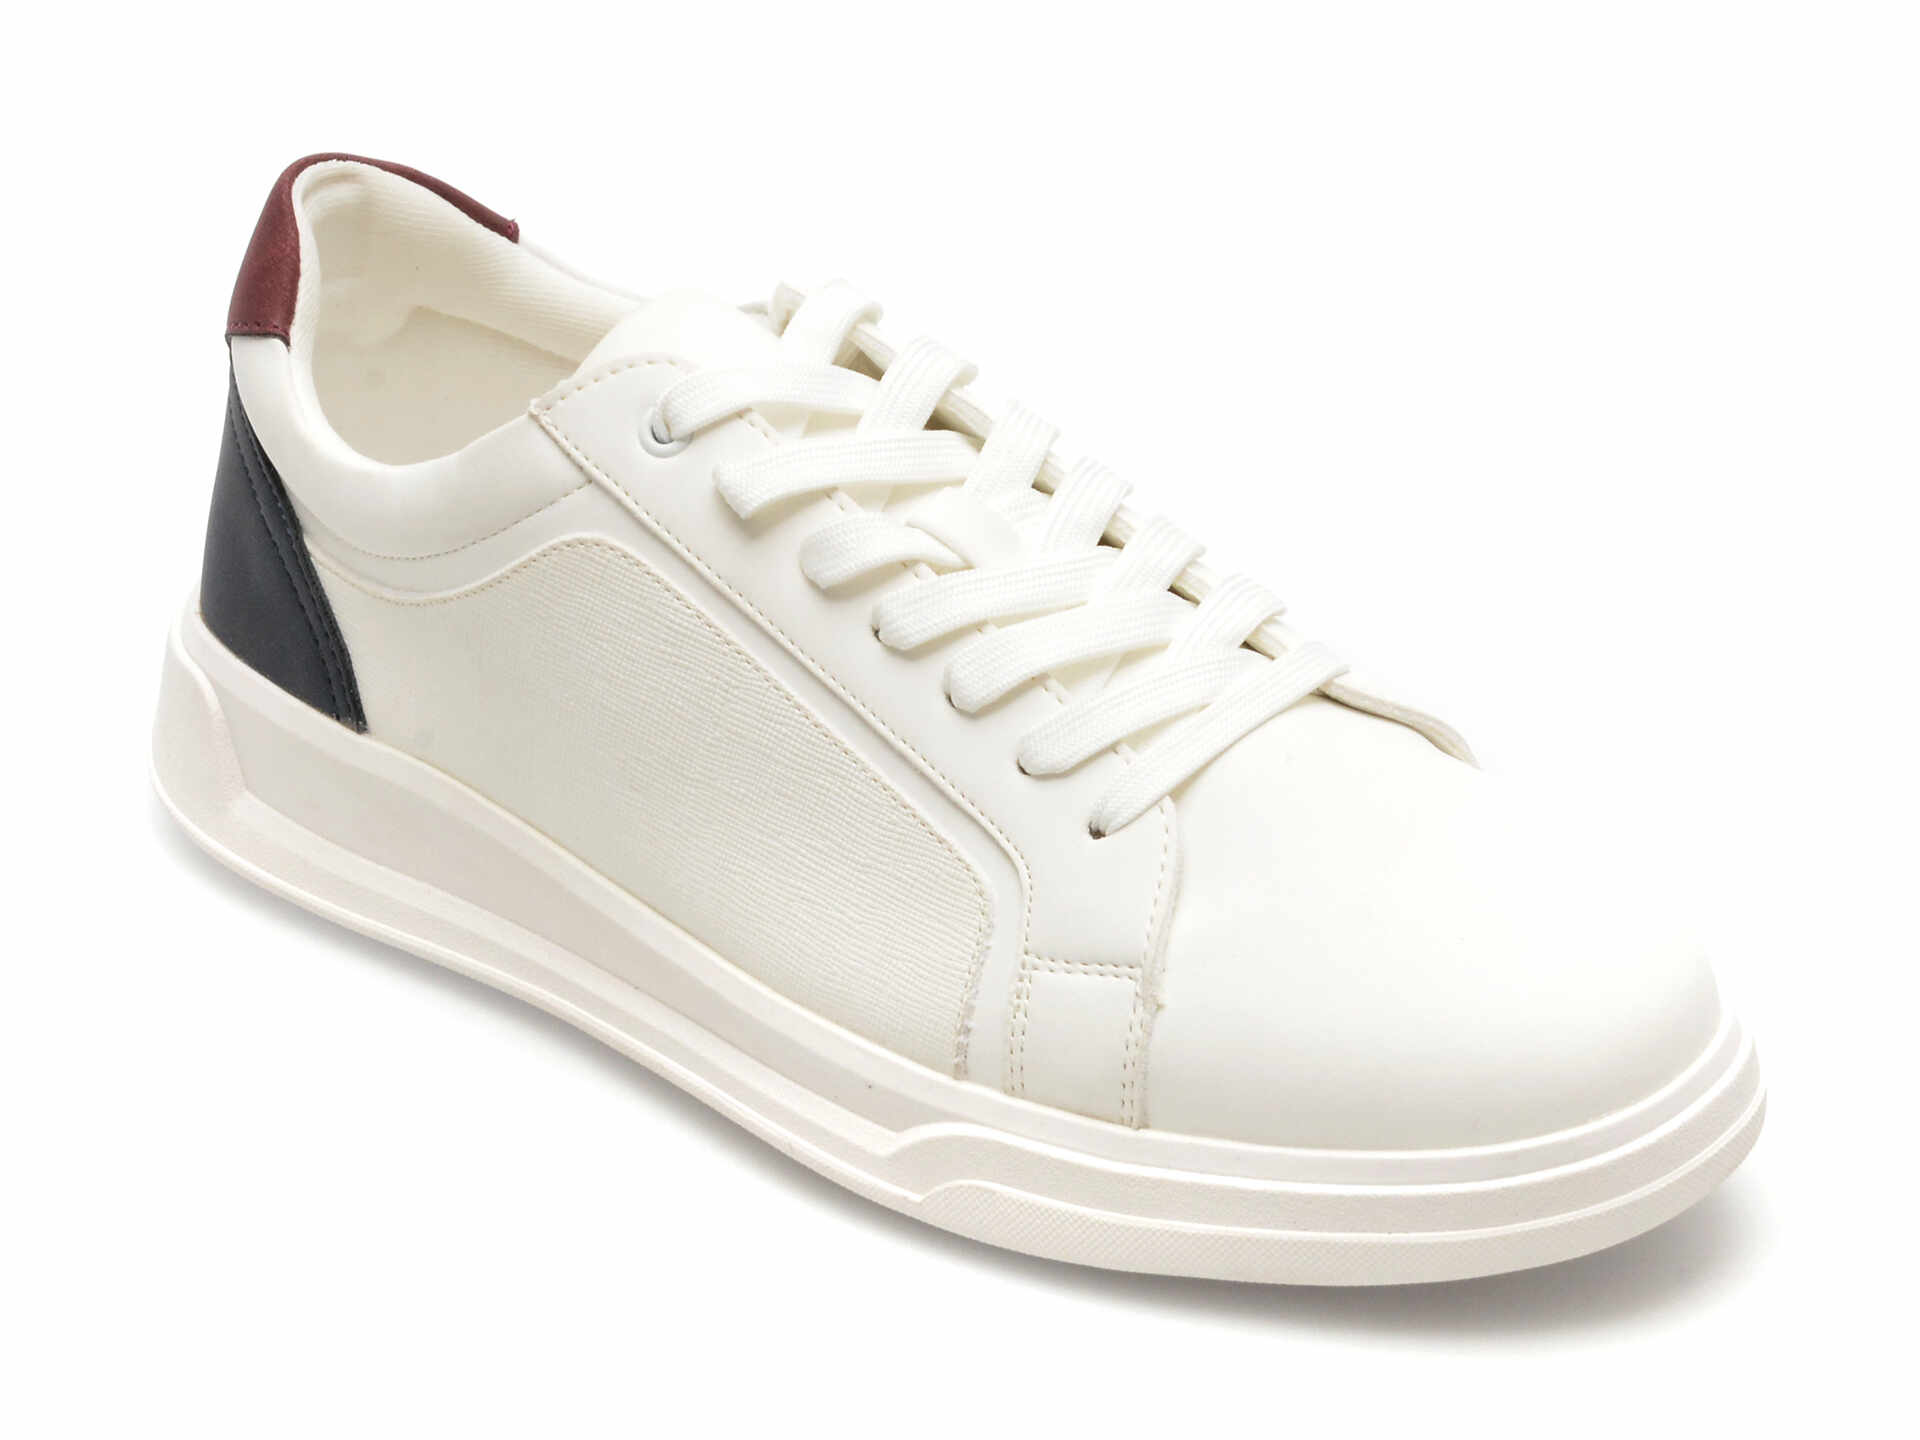 Pantofi ALDO albi, OGSPEC100, din piele ecologica